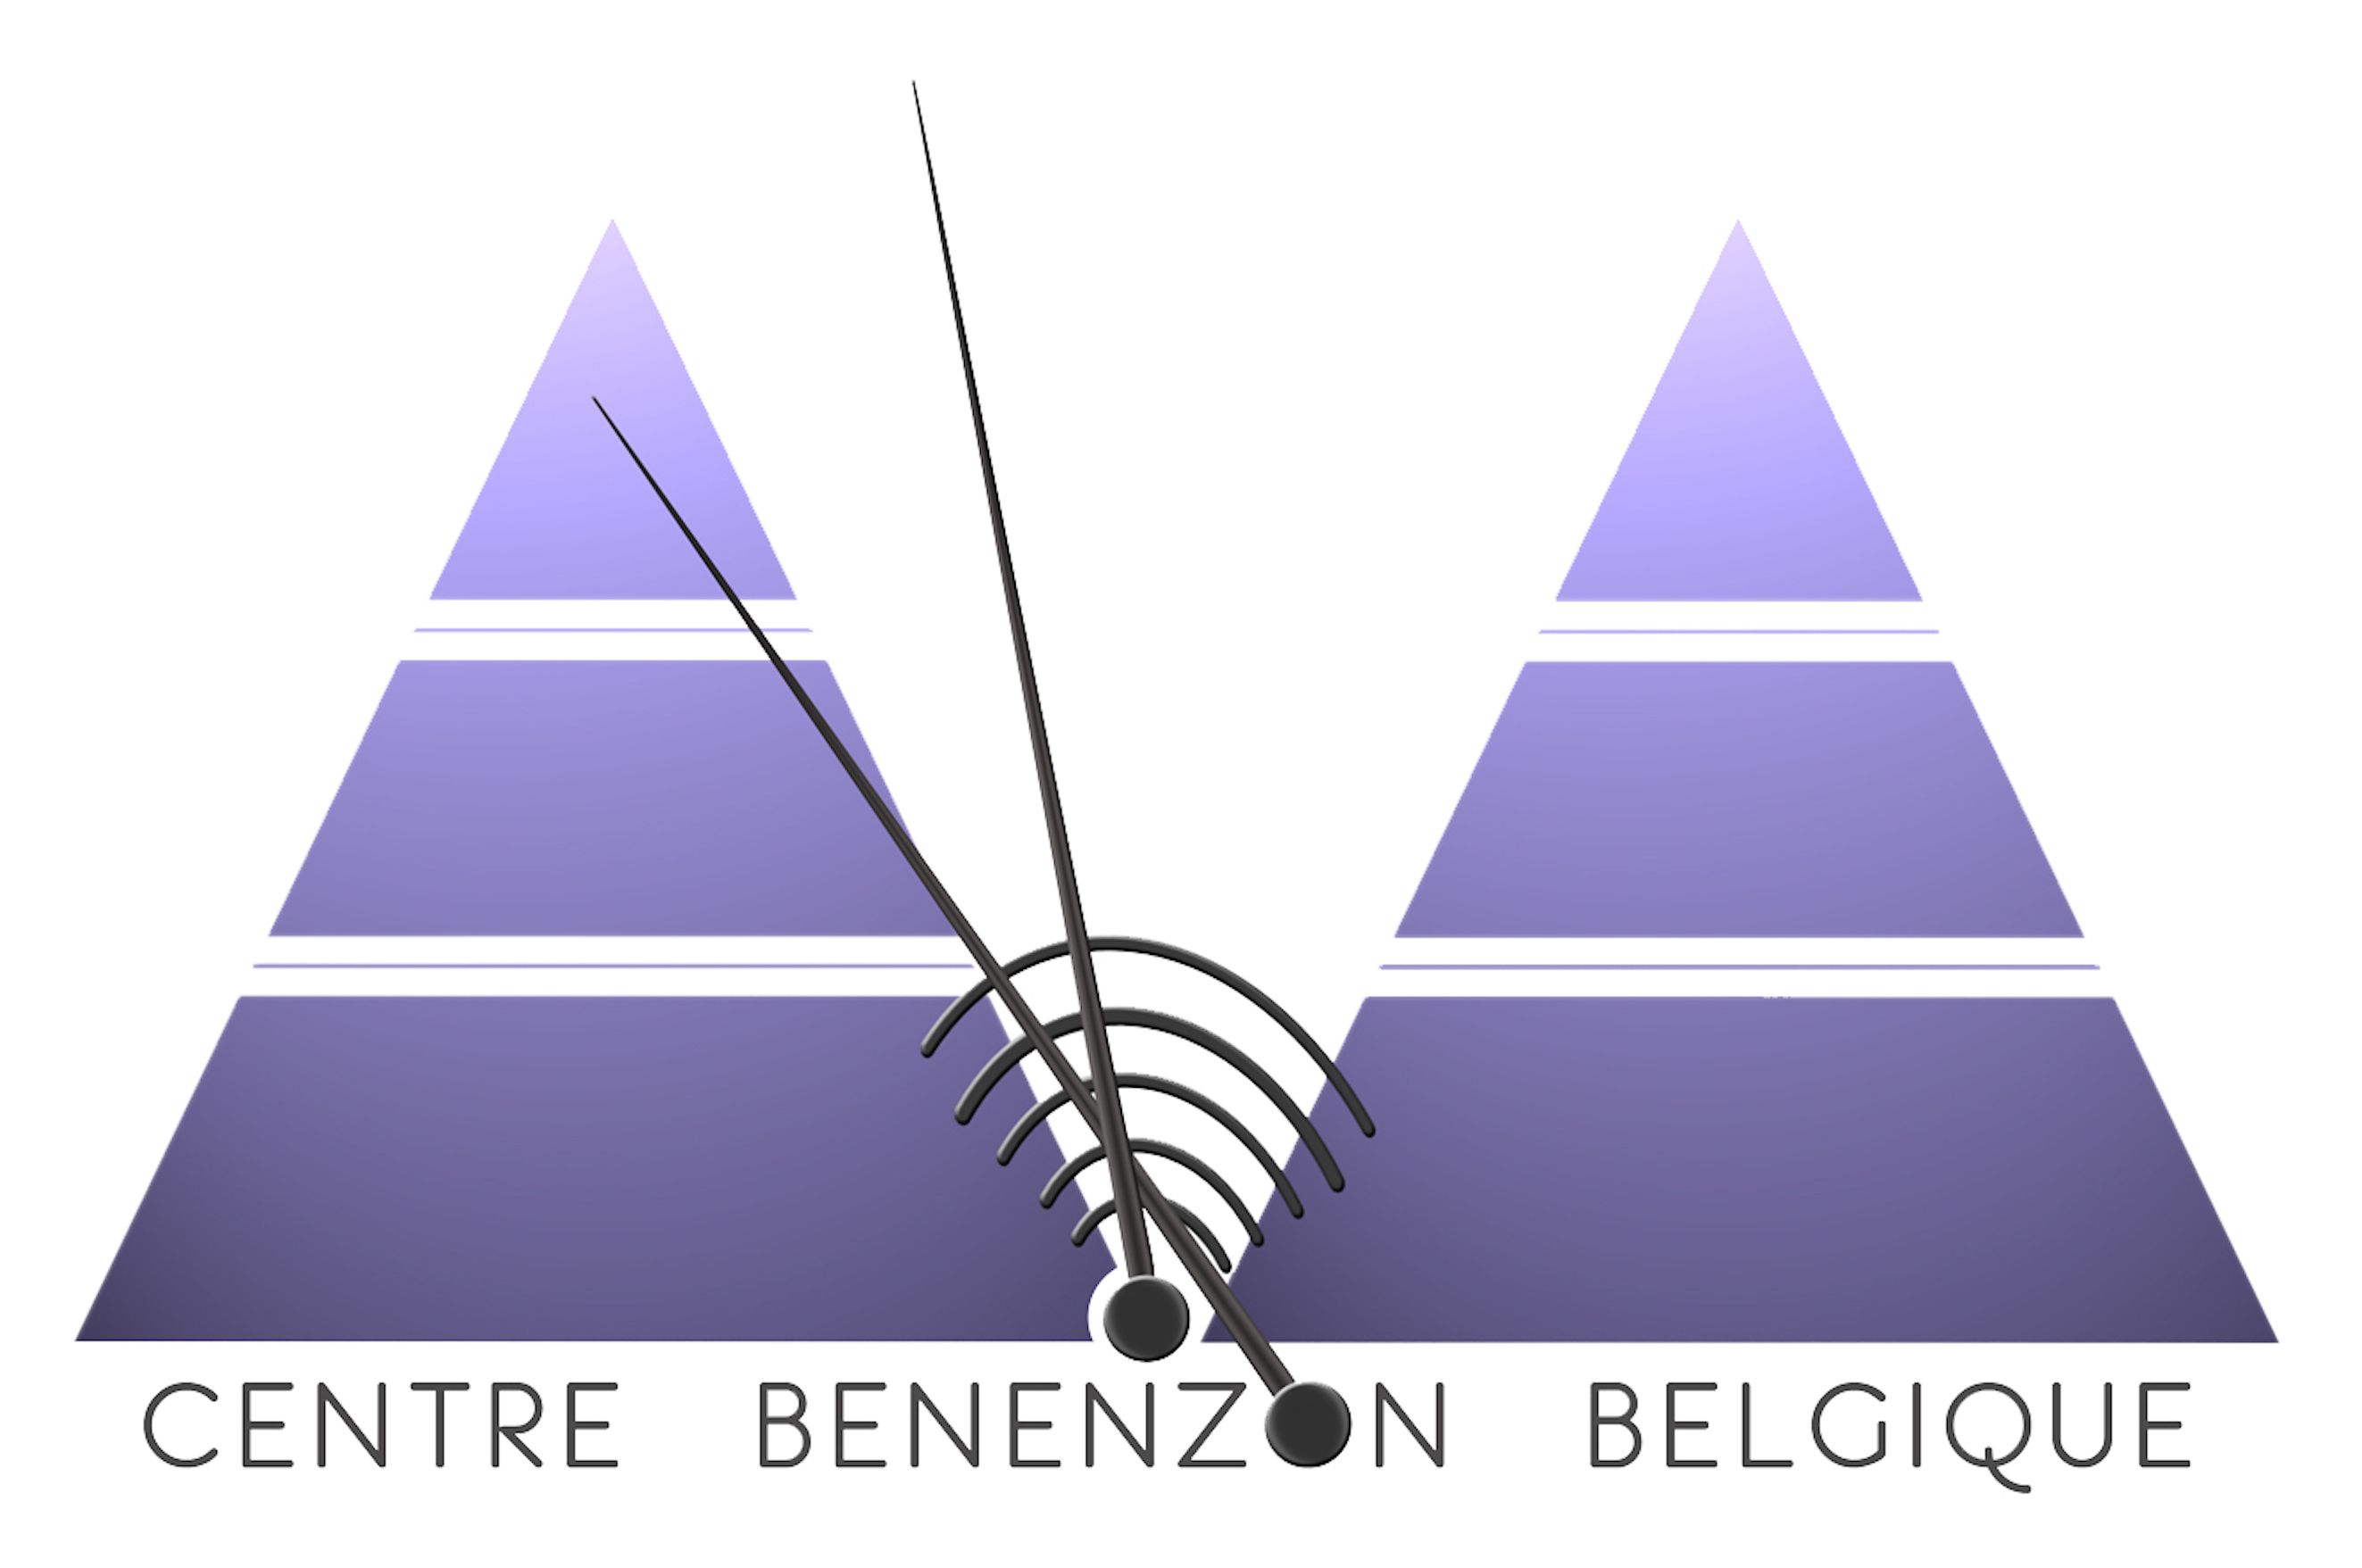 CENTRE BENENZON BELGIQUE||CENTRE BENENZON BELGIQUE